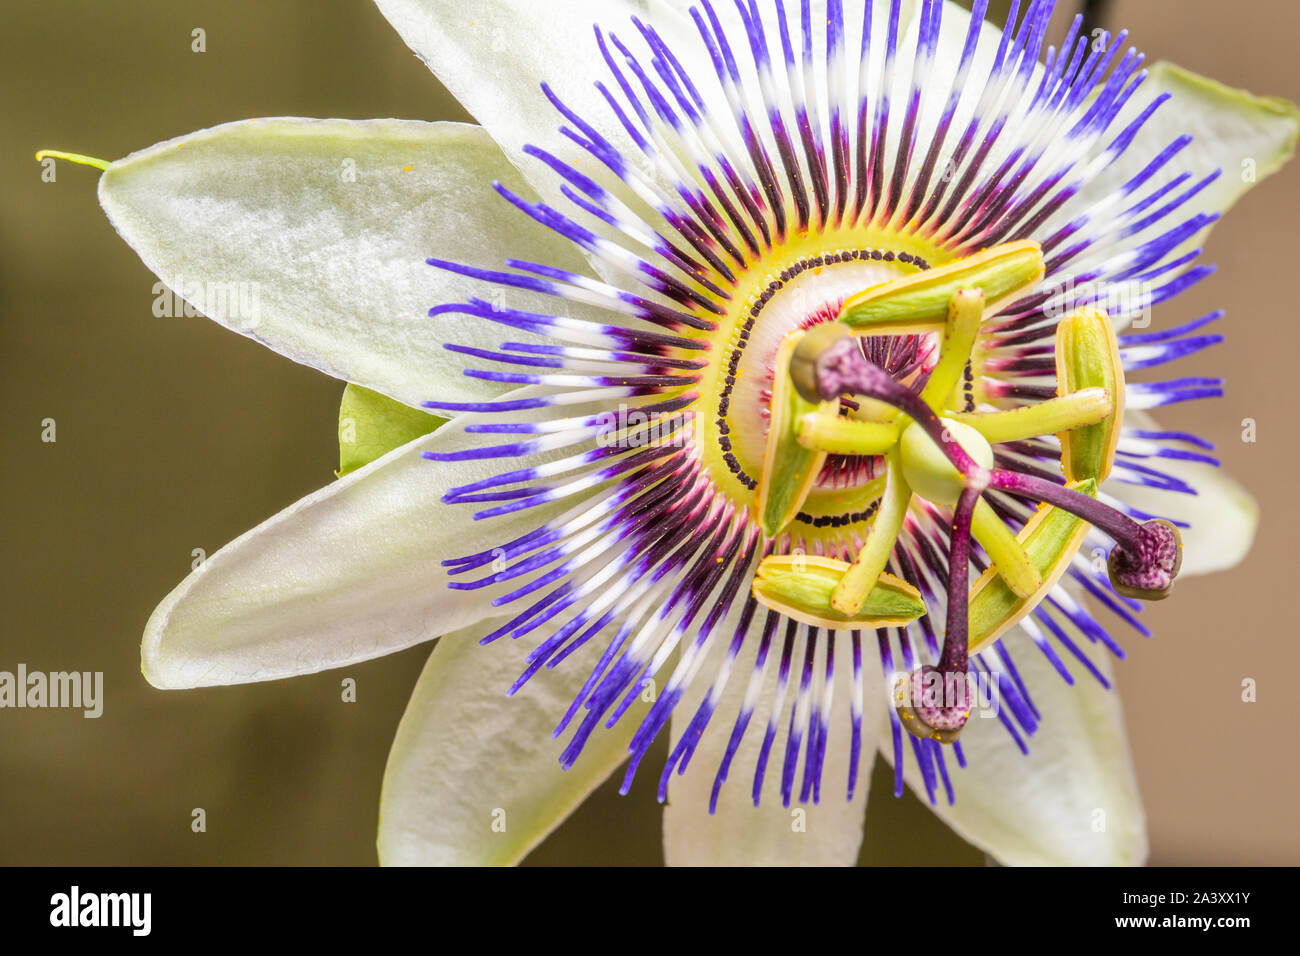 Il Blu fiore della passione o comuni o fiore della passione (Passiflora caerulea), nativo di Argentina e Brasile, su sfondo grigio Foto Stock